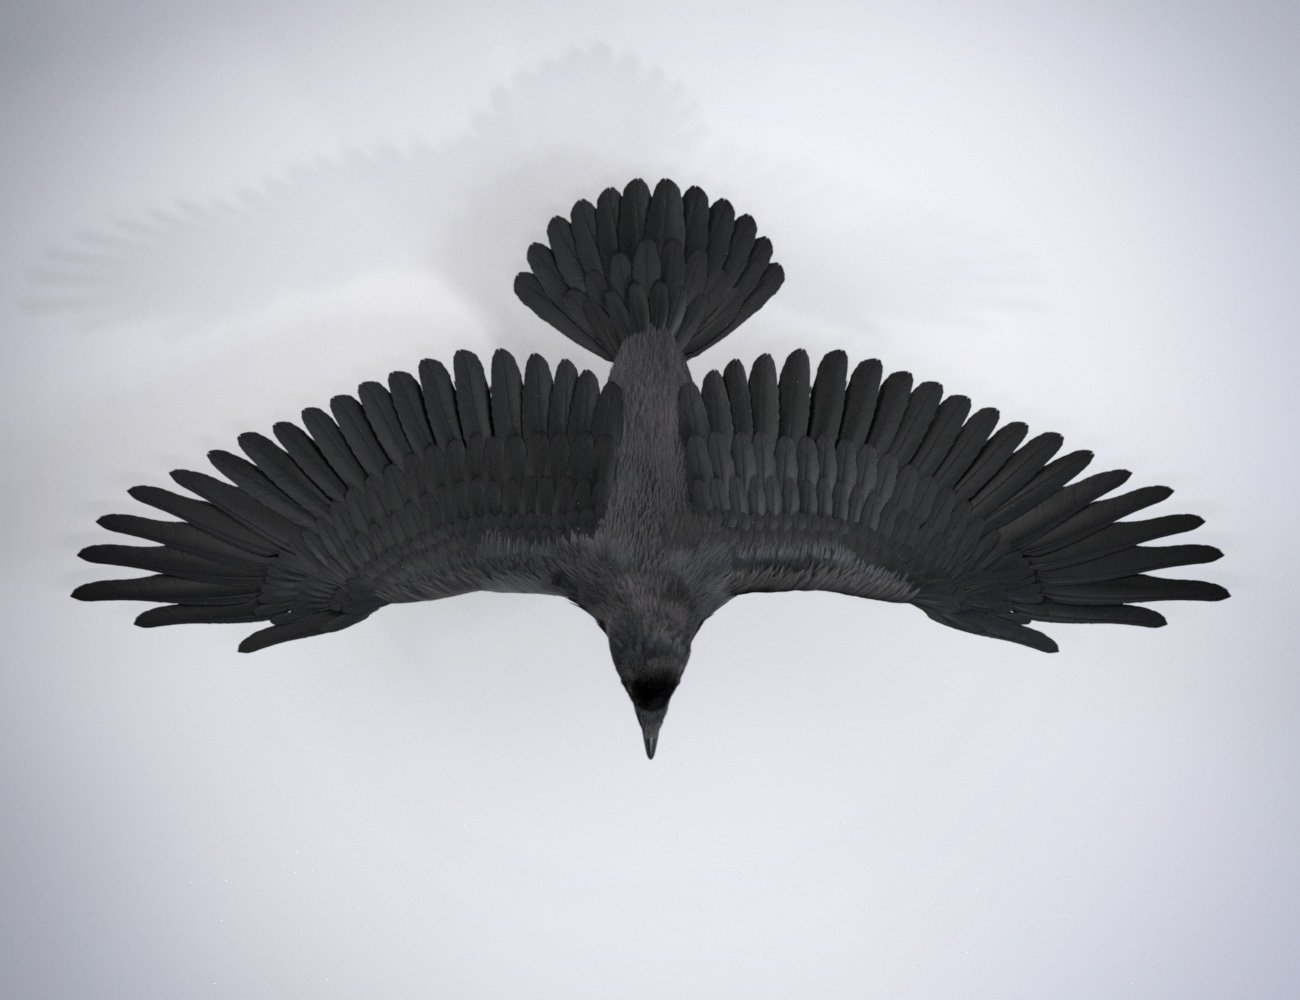 Daz Crow by: Hypertaf, 3D Models by Daz 3D